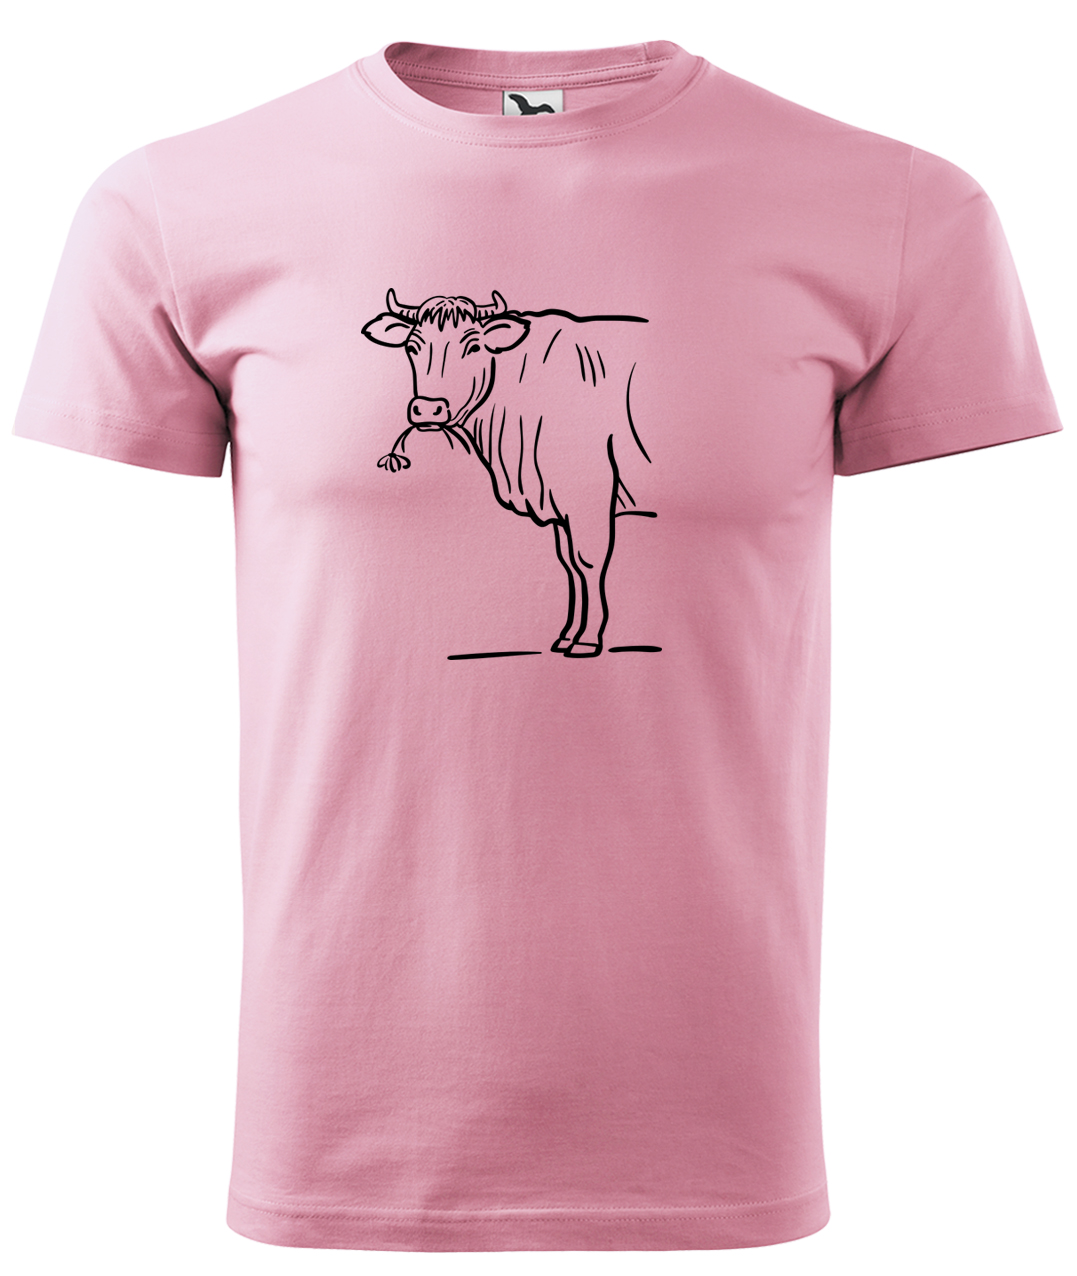 Dětské tričko s krávou - Býk Velikost: 8 let / 134 cm, Barva: Růžová (30), Délka rukávu: Krátký rukáv